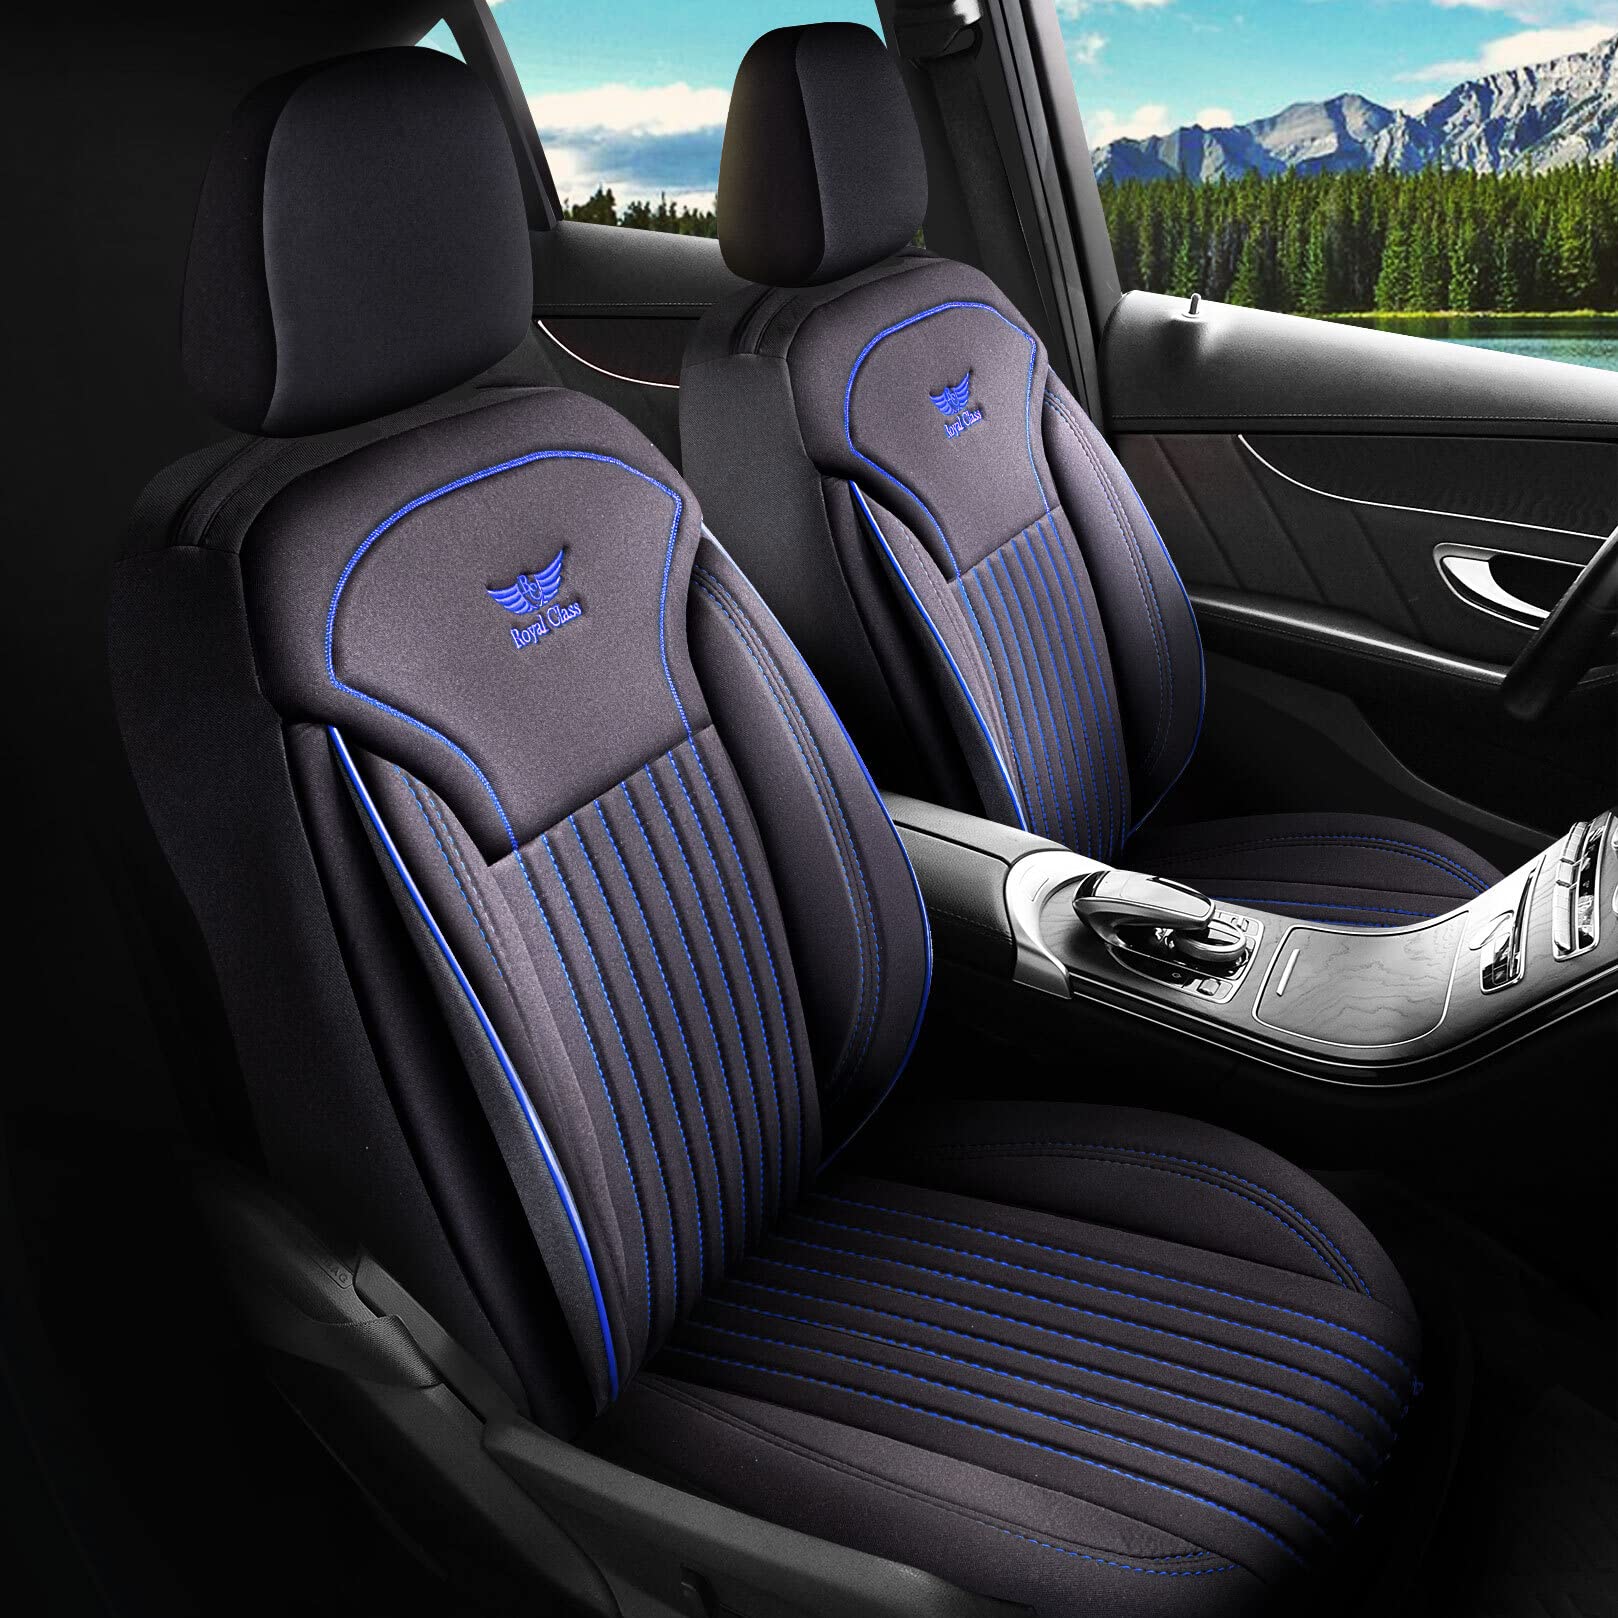 Royal Class Auto Sitzbezüge kompatibel für Renault Kadjar in Schwarz Blau Fahrer und Beifahrer, Autositzbezug Schonbezug Sitzbezug Auto Komplettset 2-Sitze von RC Royal Class